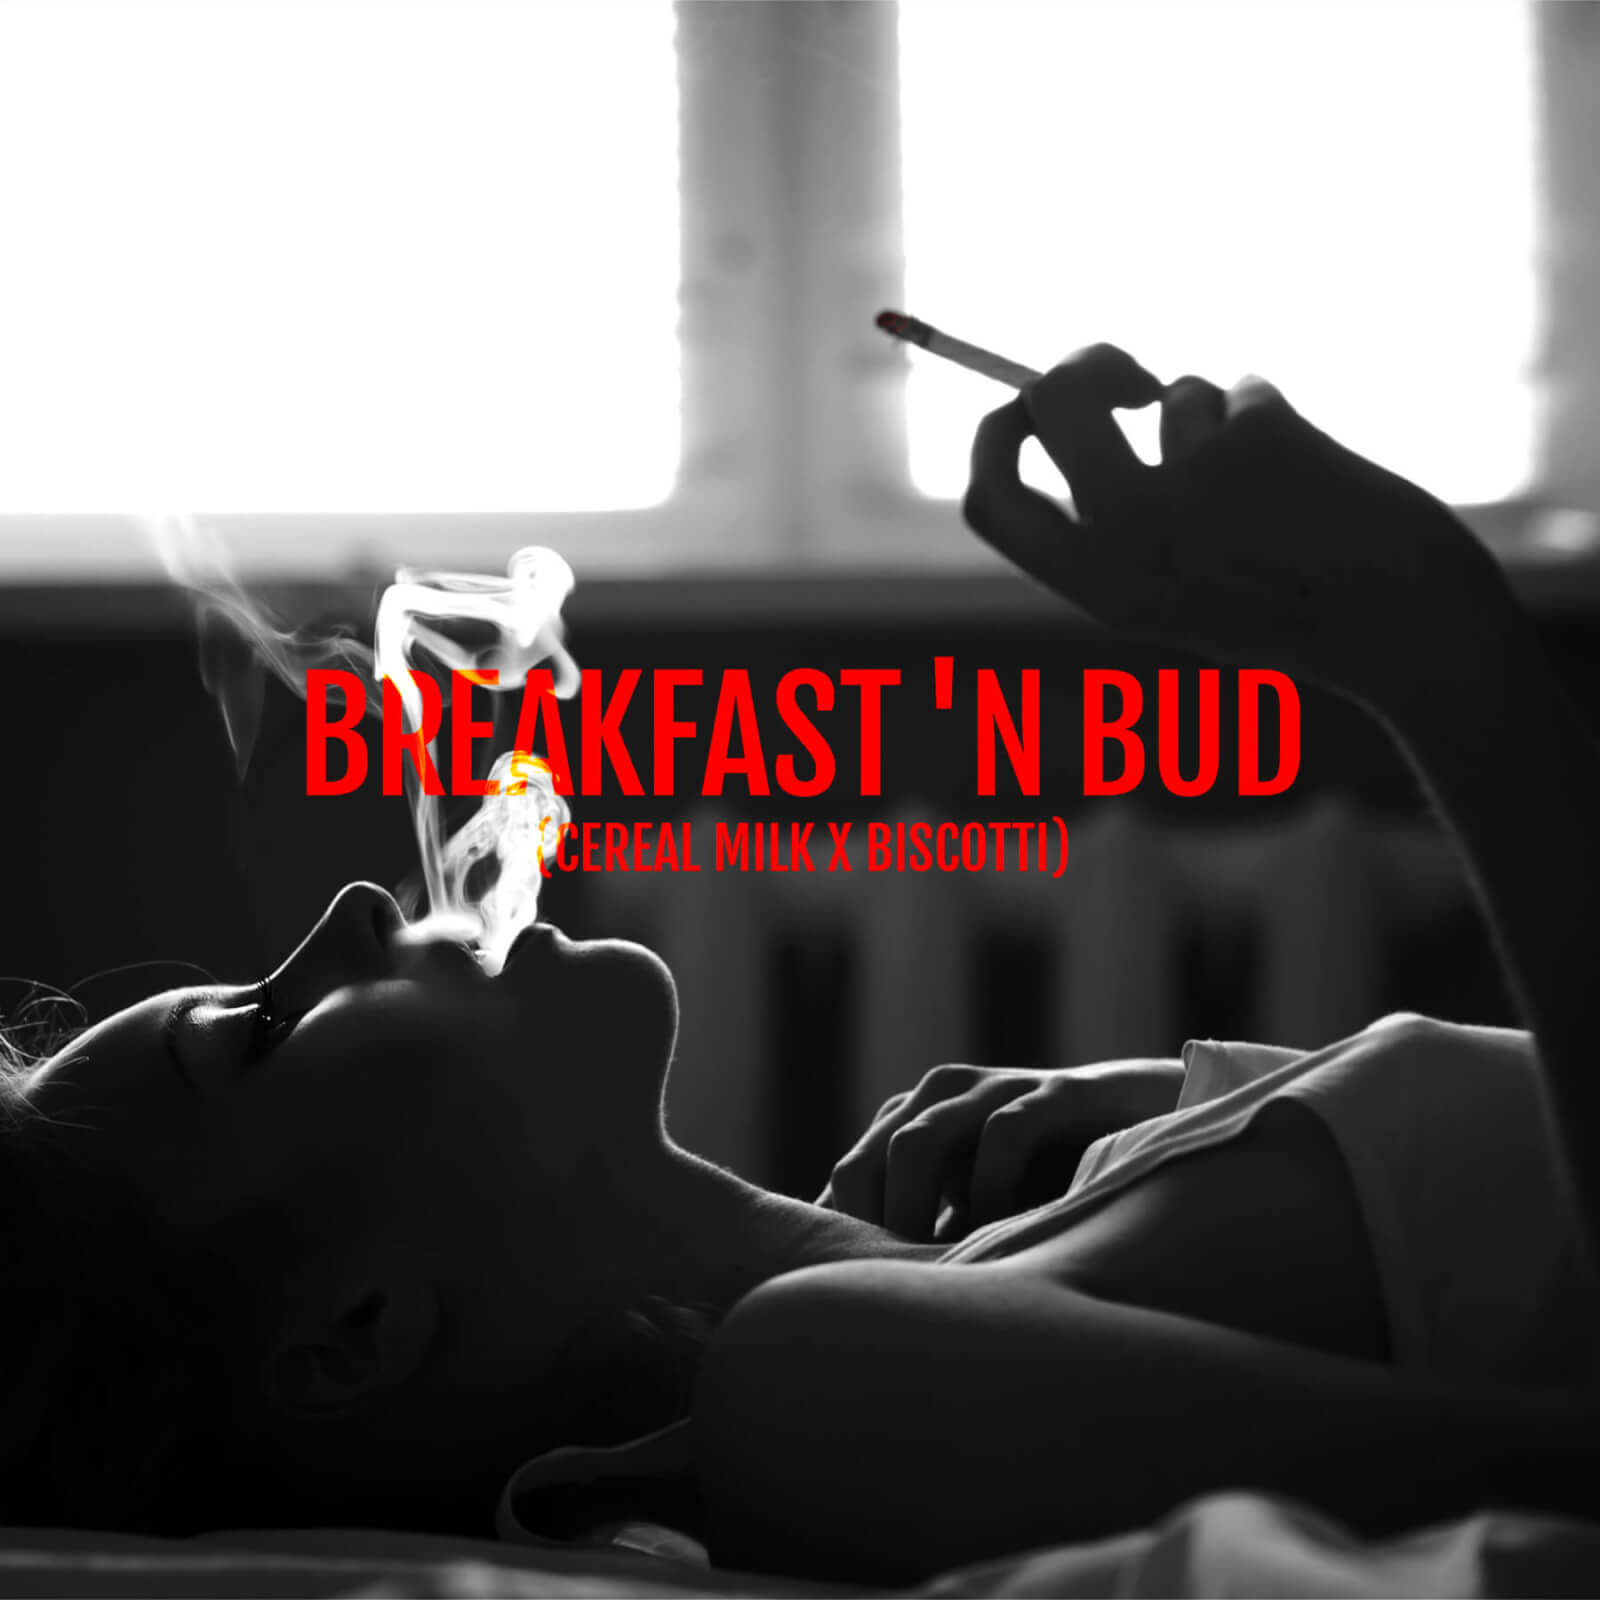 Breakfast ’n Bud